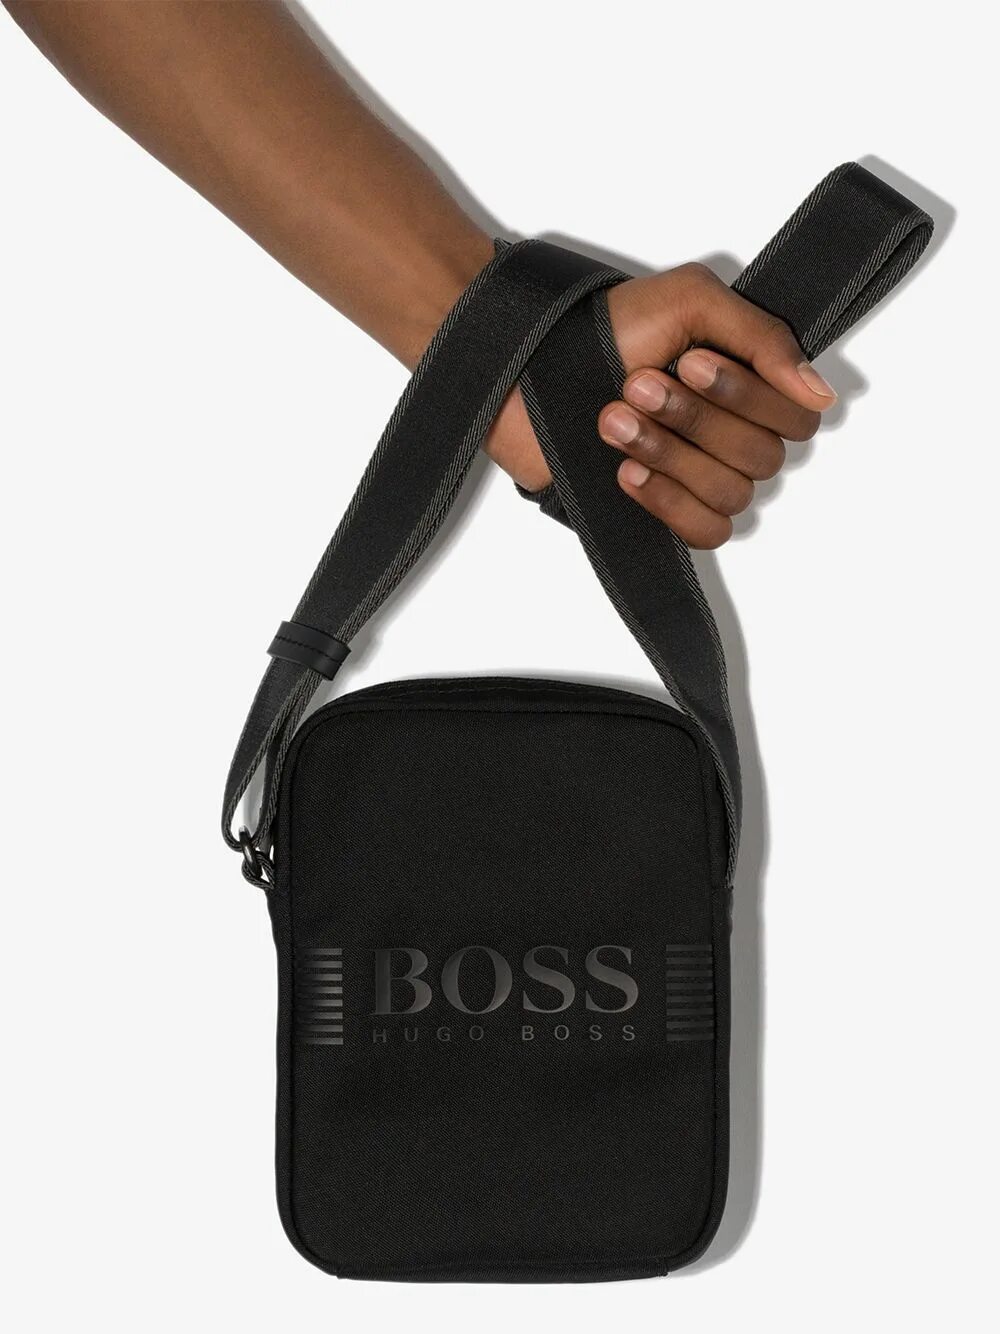 Сумка Cross body Boss. Сумка через плечо Hugo Boss черная мужская. Черная сумка Hugo Boss женская через плечо. Сумка Hugo Boss через плечо с сеткой. Босс мини а 3